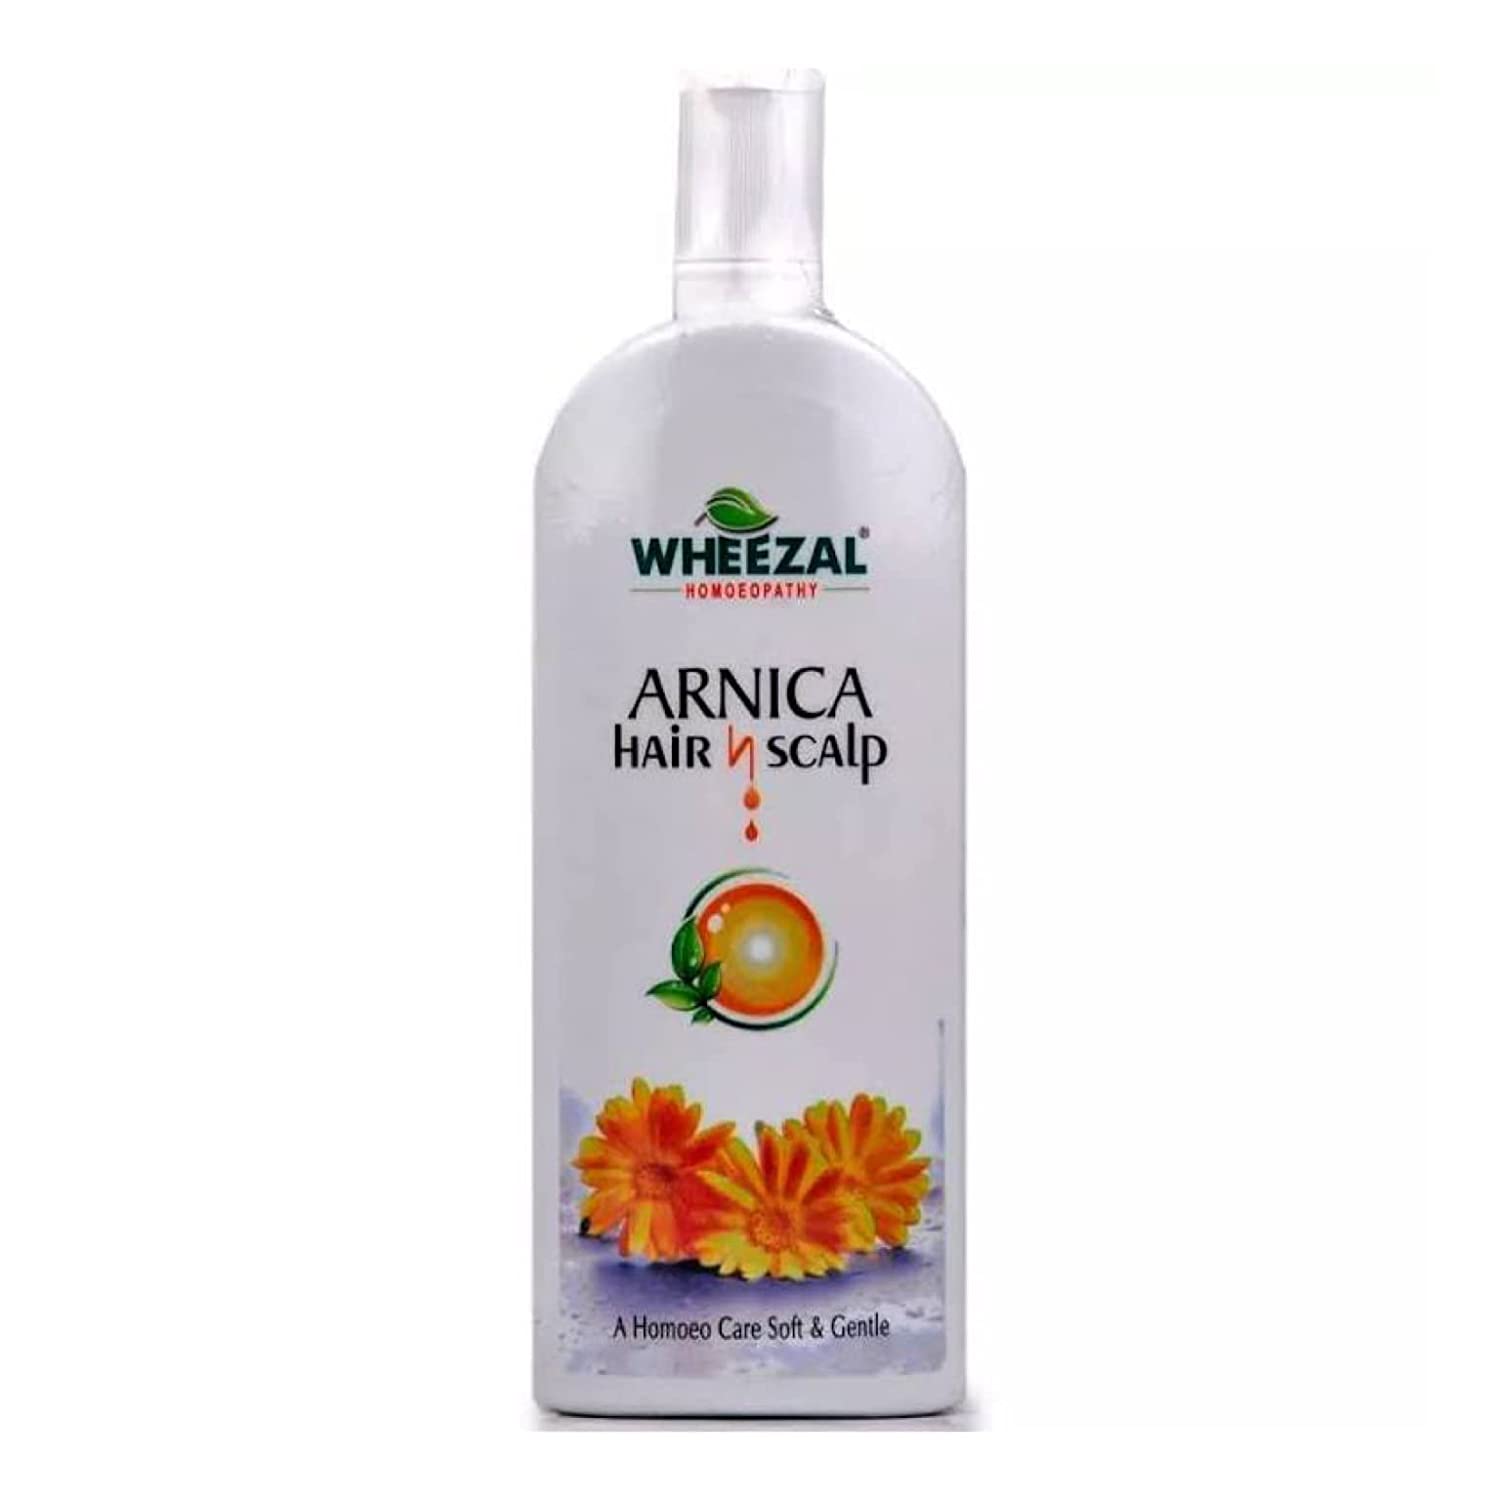 Wheezal Arnica Hair and Scalp Shampoo